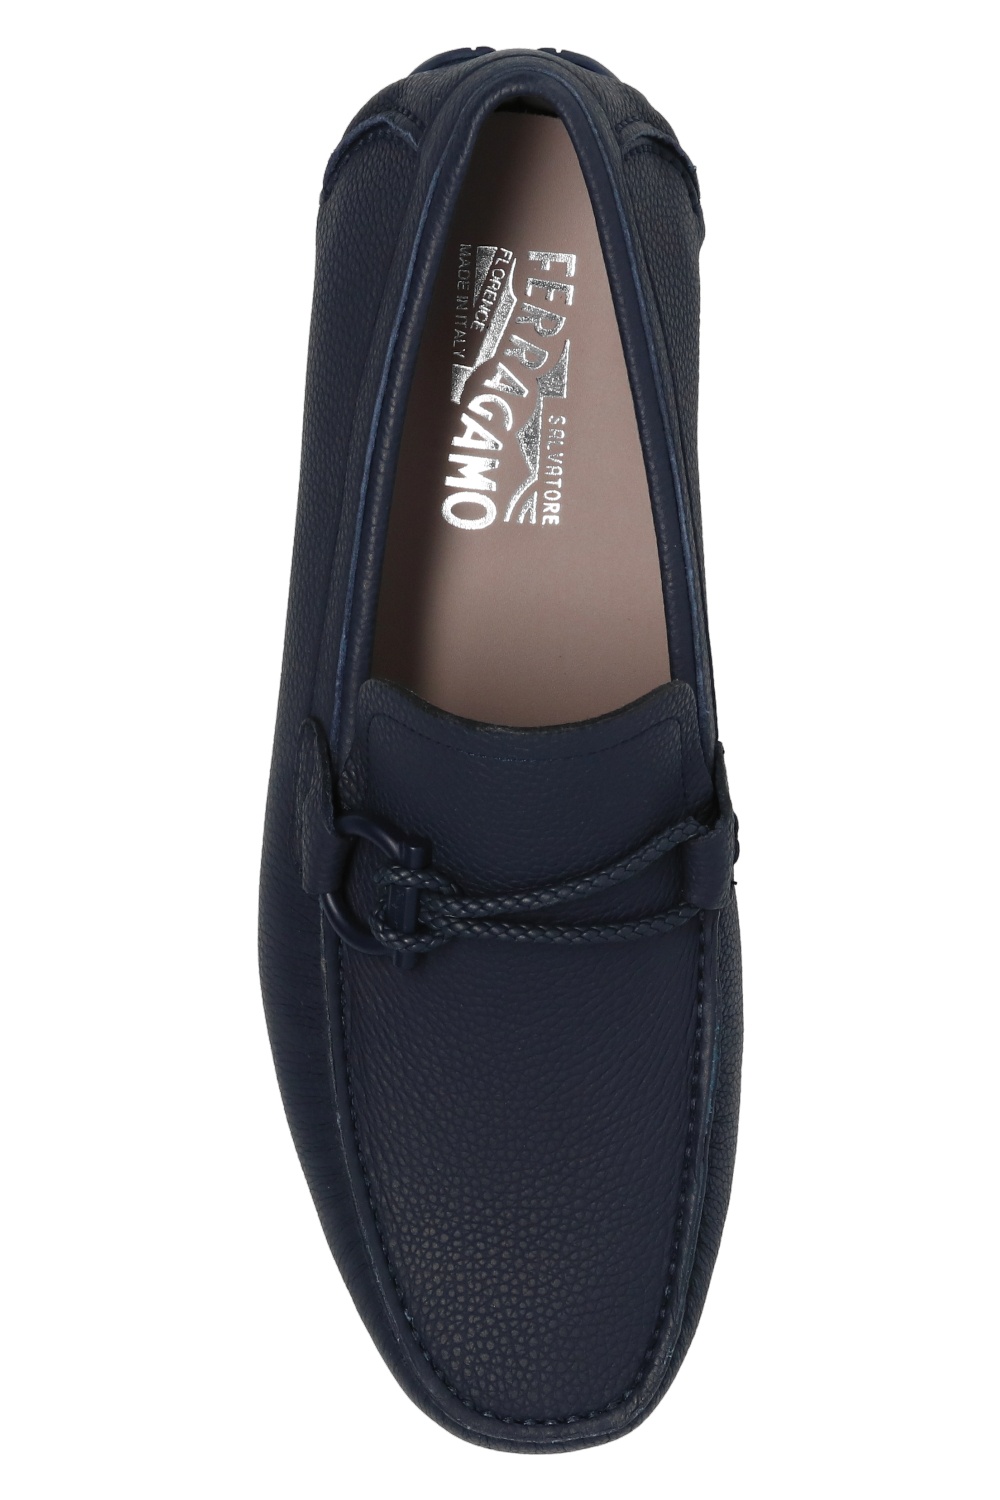 Salvatore Ferragamo 'Front 4' leather moccasins | Men's Shoes 